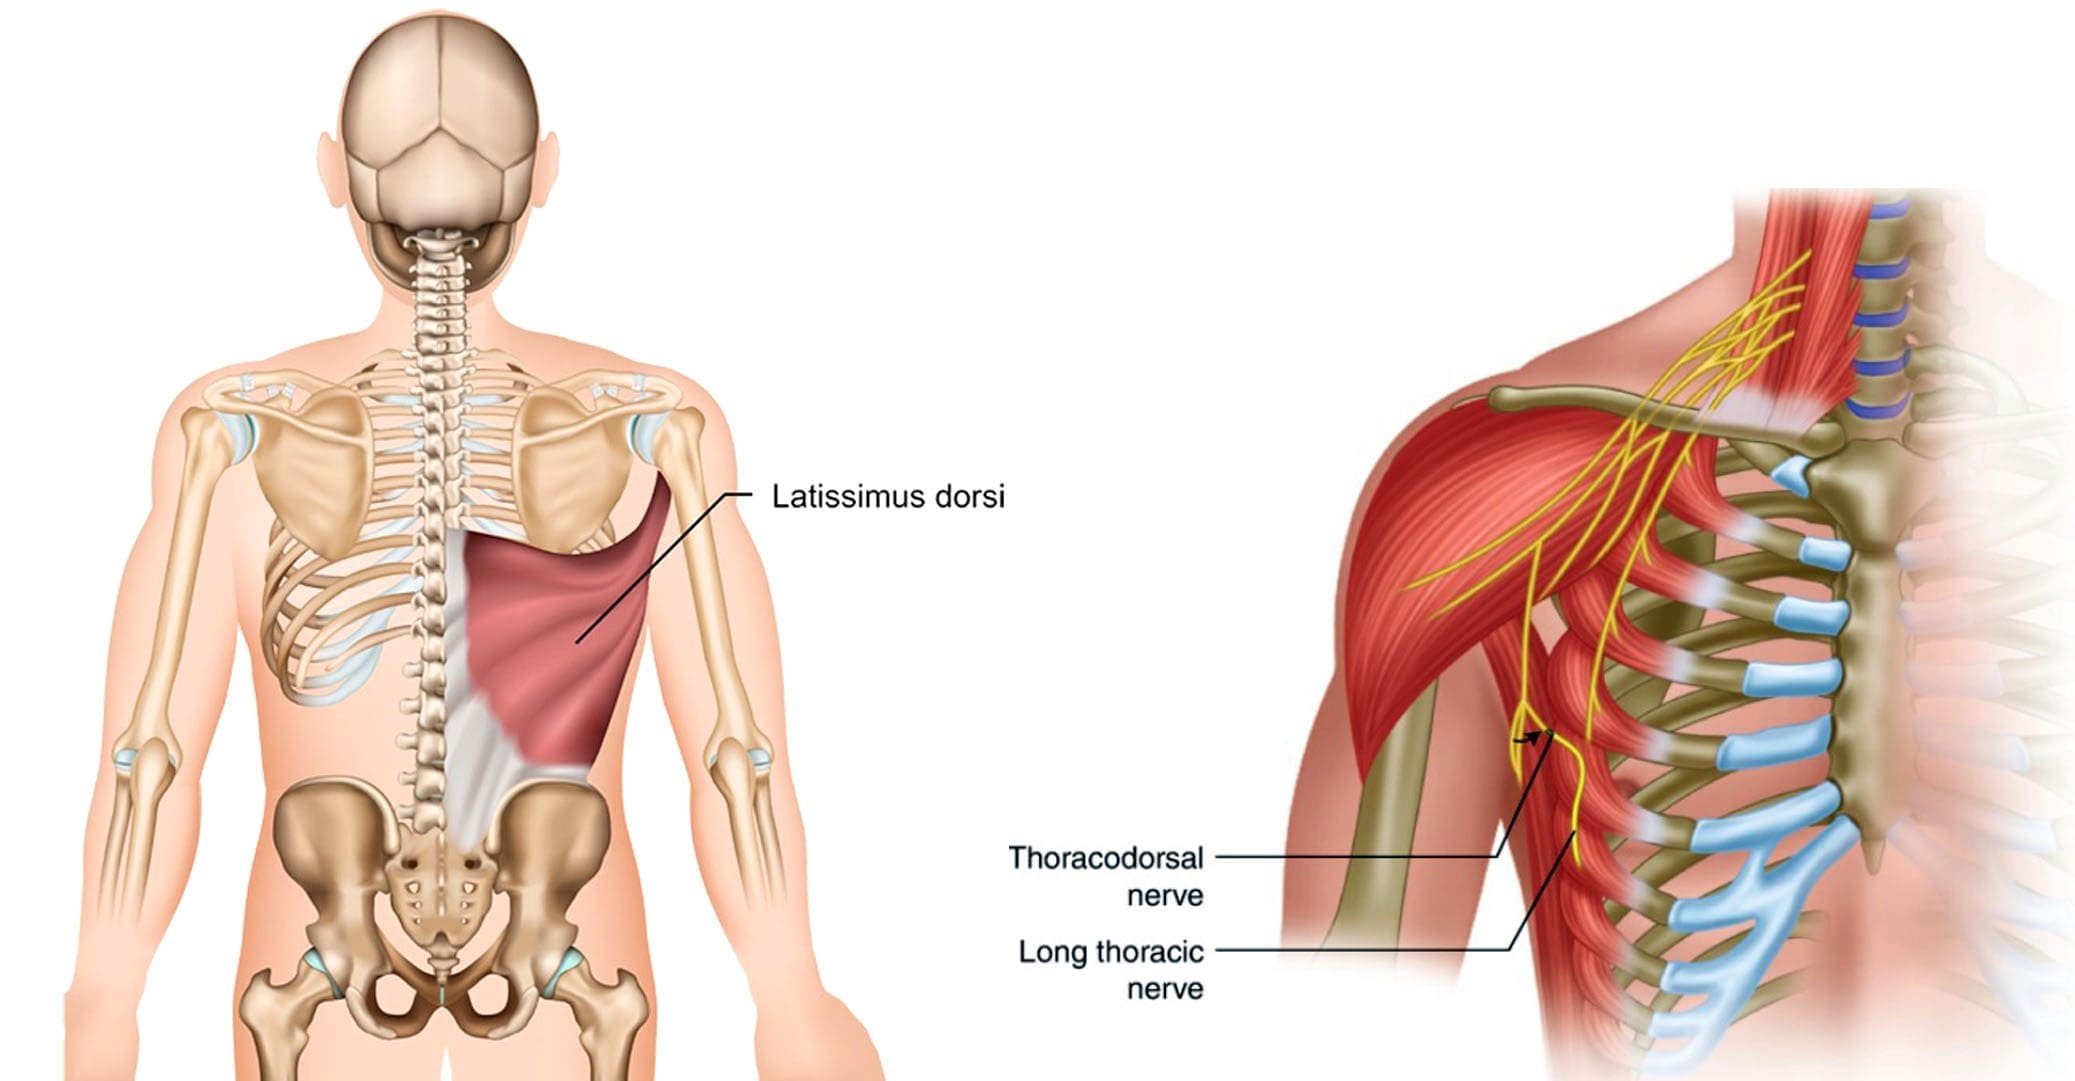 Thoracodorsal Nerve Injury: Anatomy & Symptoms Explained